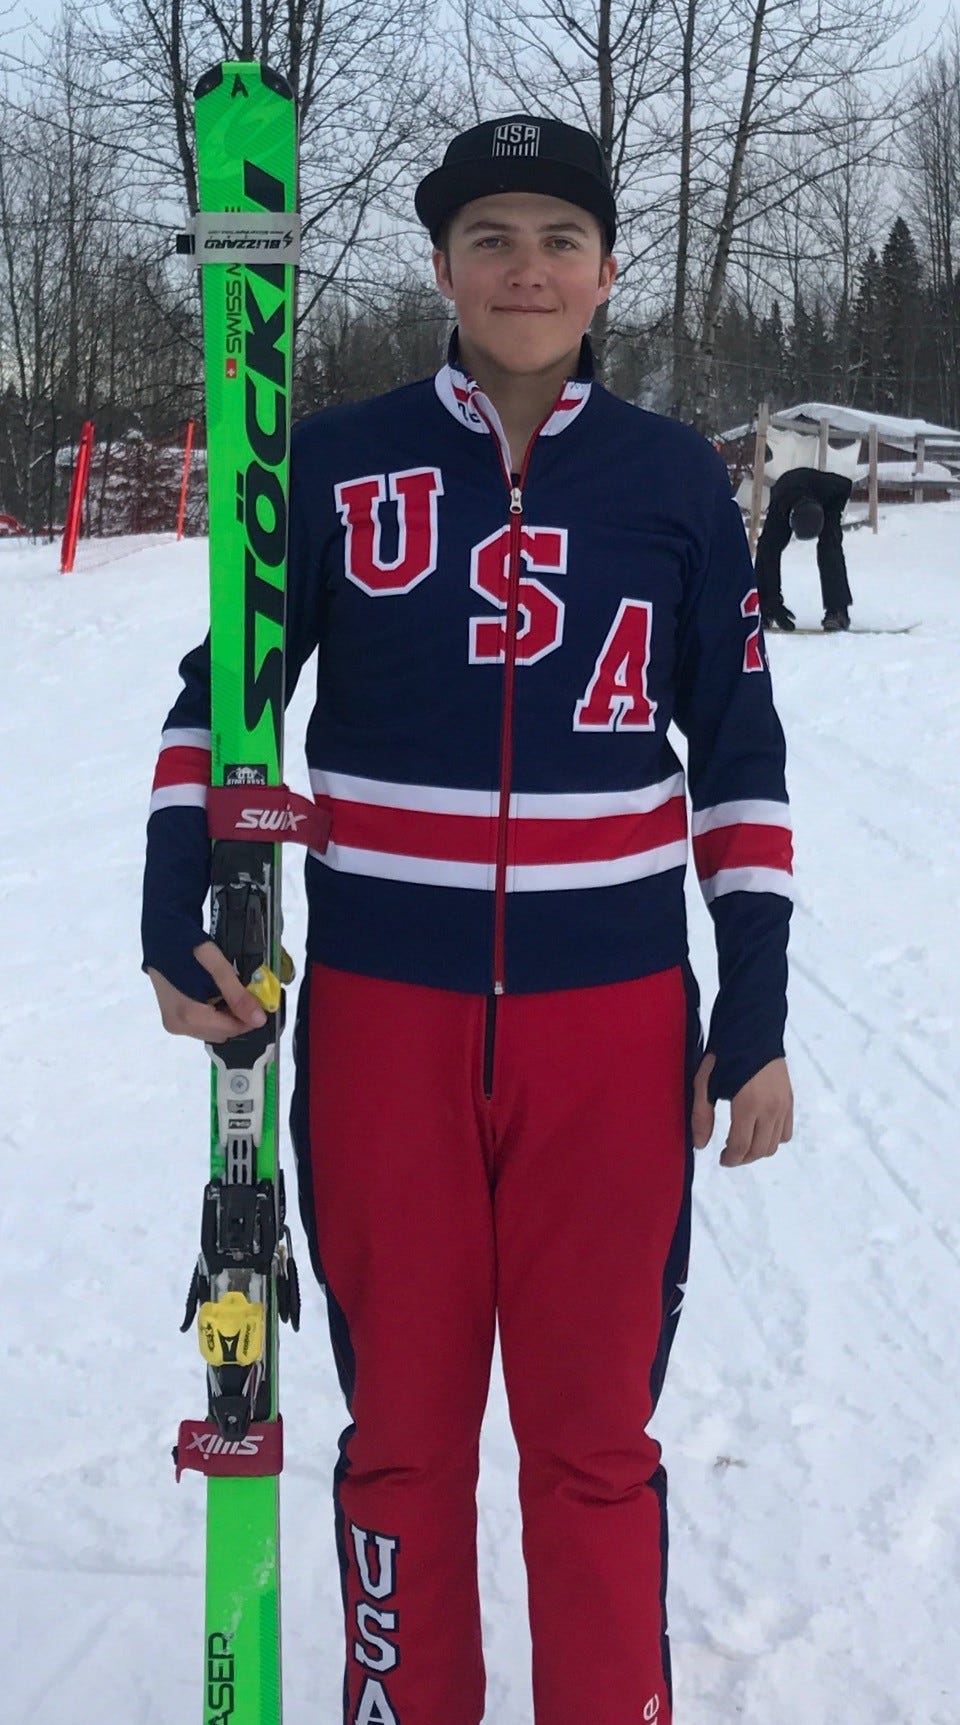 Hayward to represent USA at World University Games